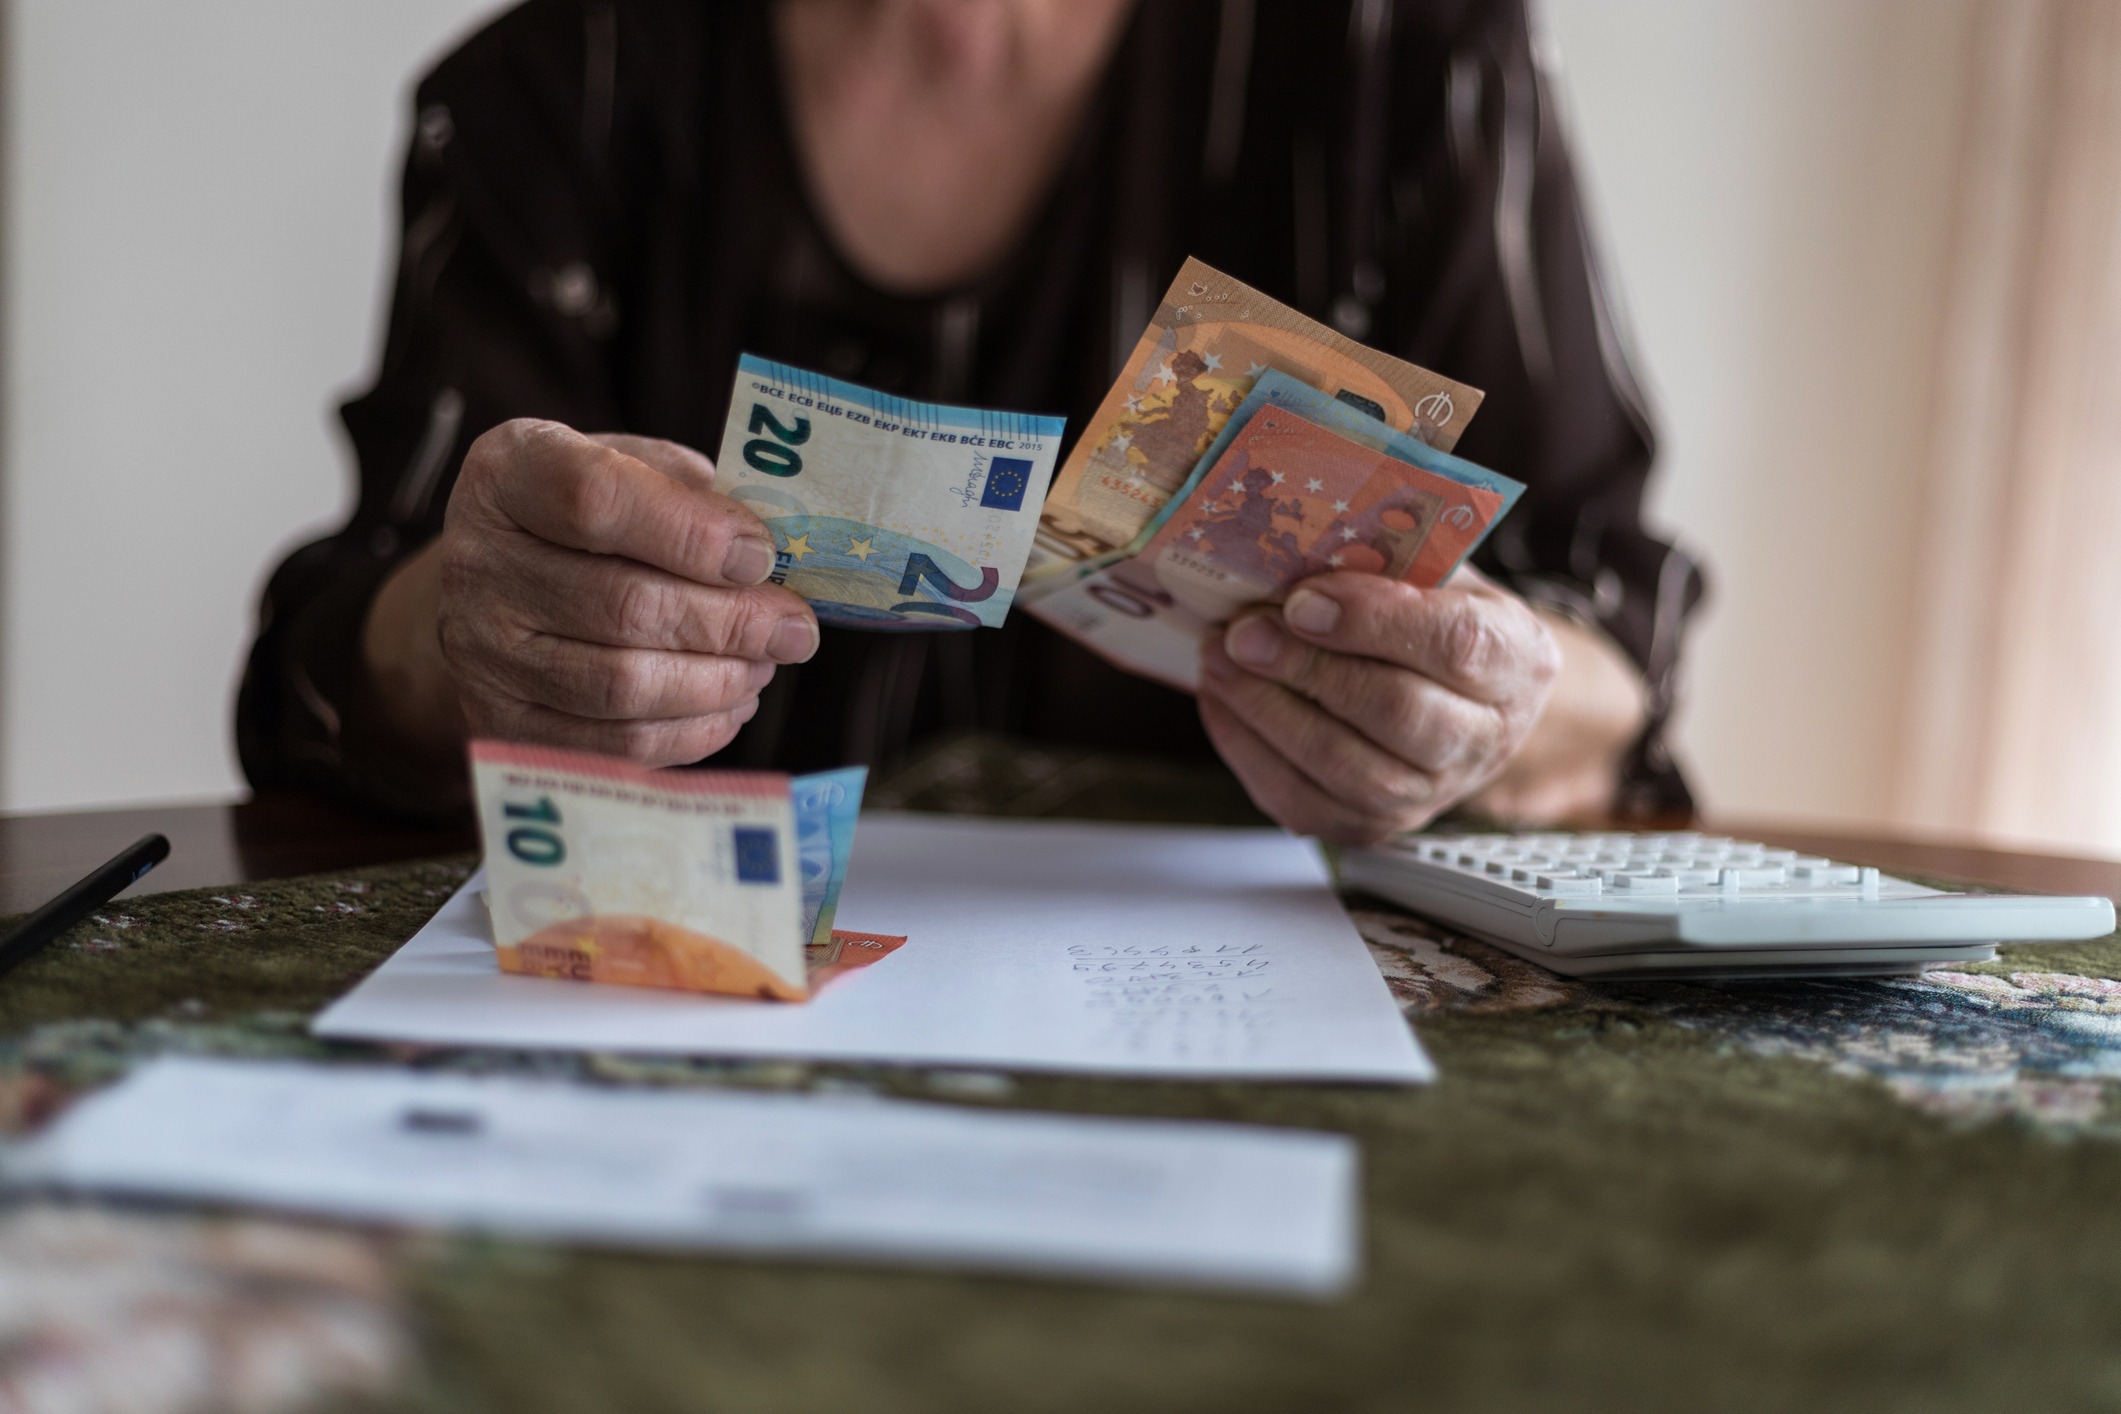 Μιχαηλίδου: Μέχρι τέλος Μαρτίου αναδρομικά σε συνταξιούχους με παράλληλη ασφάλιση 